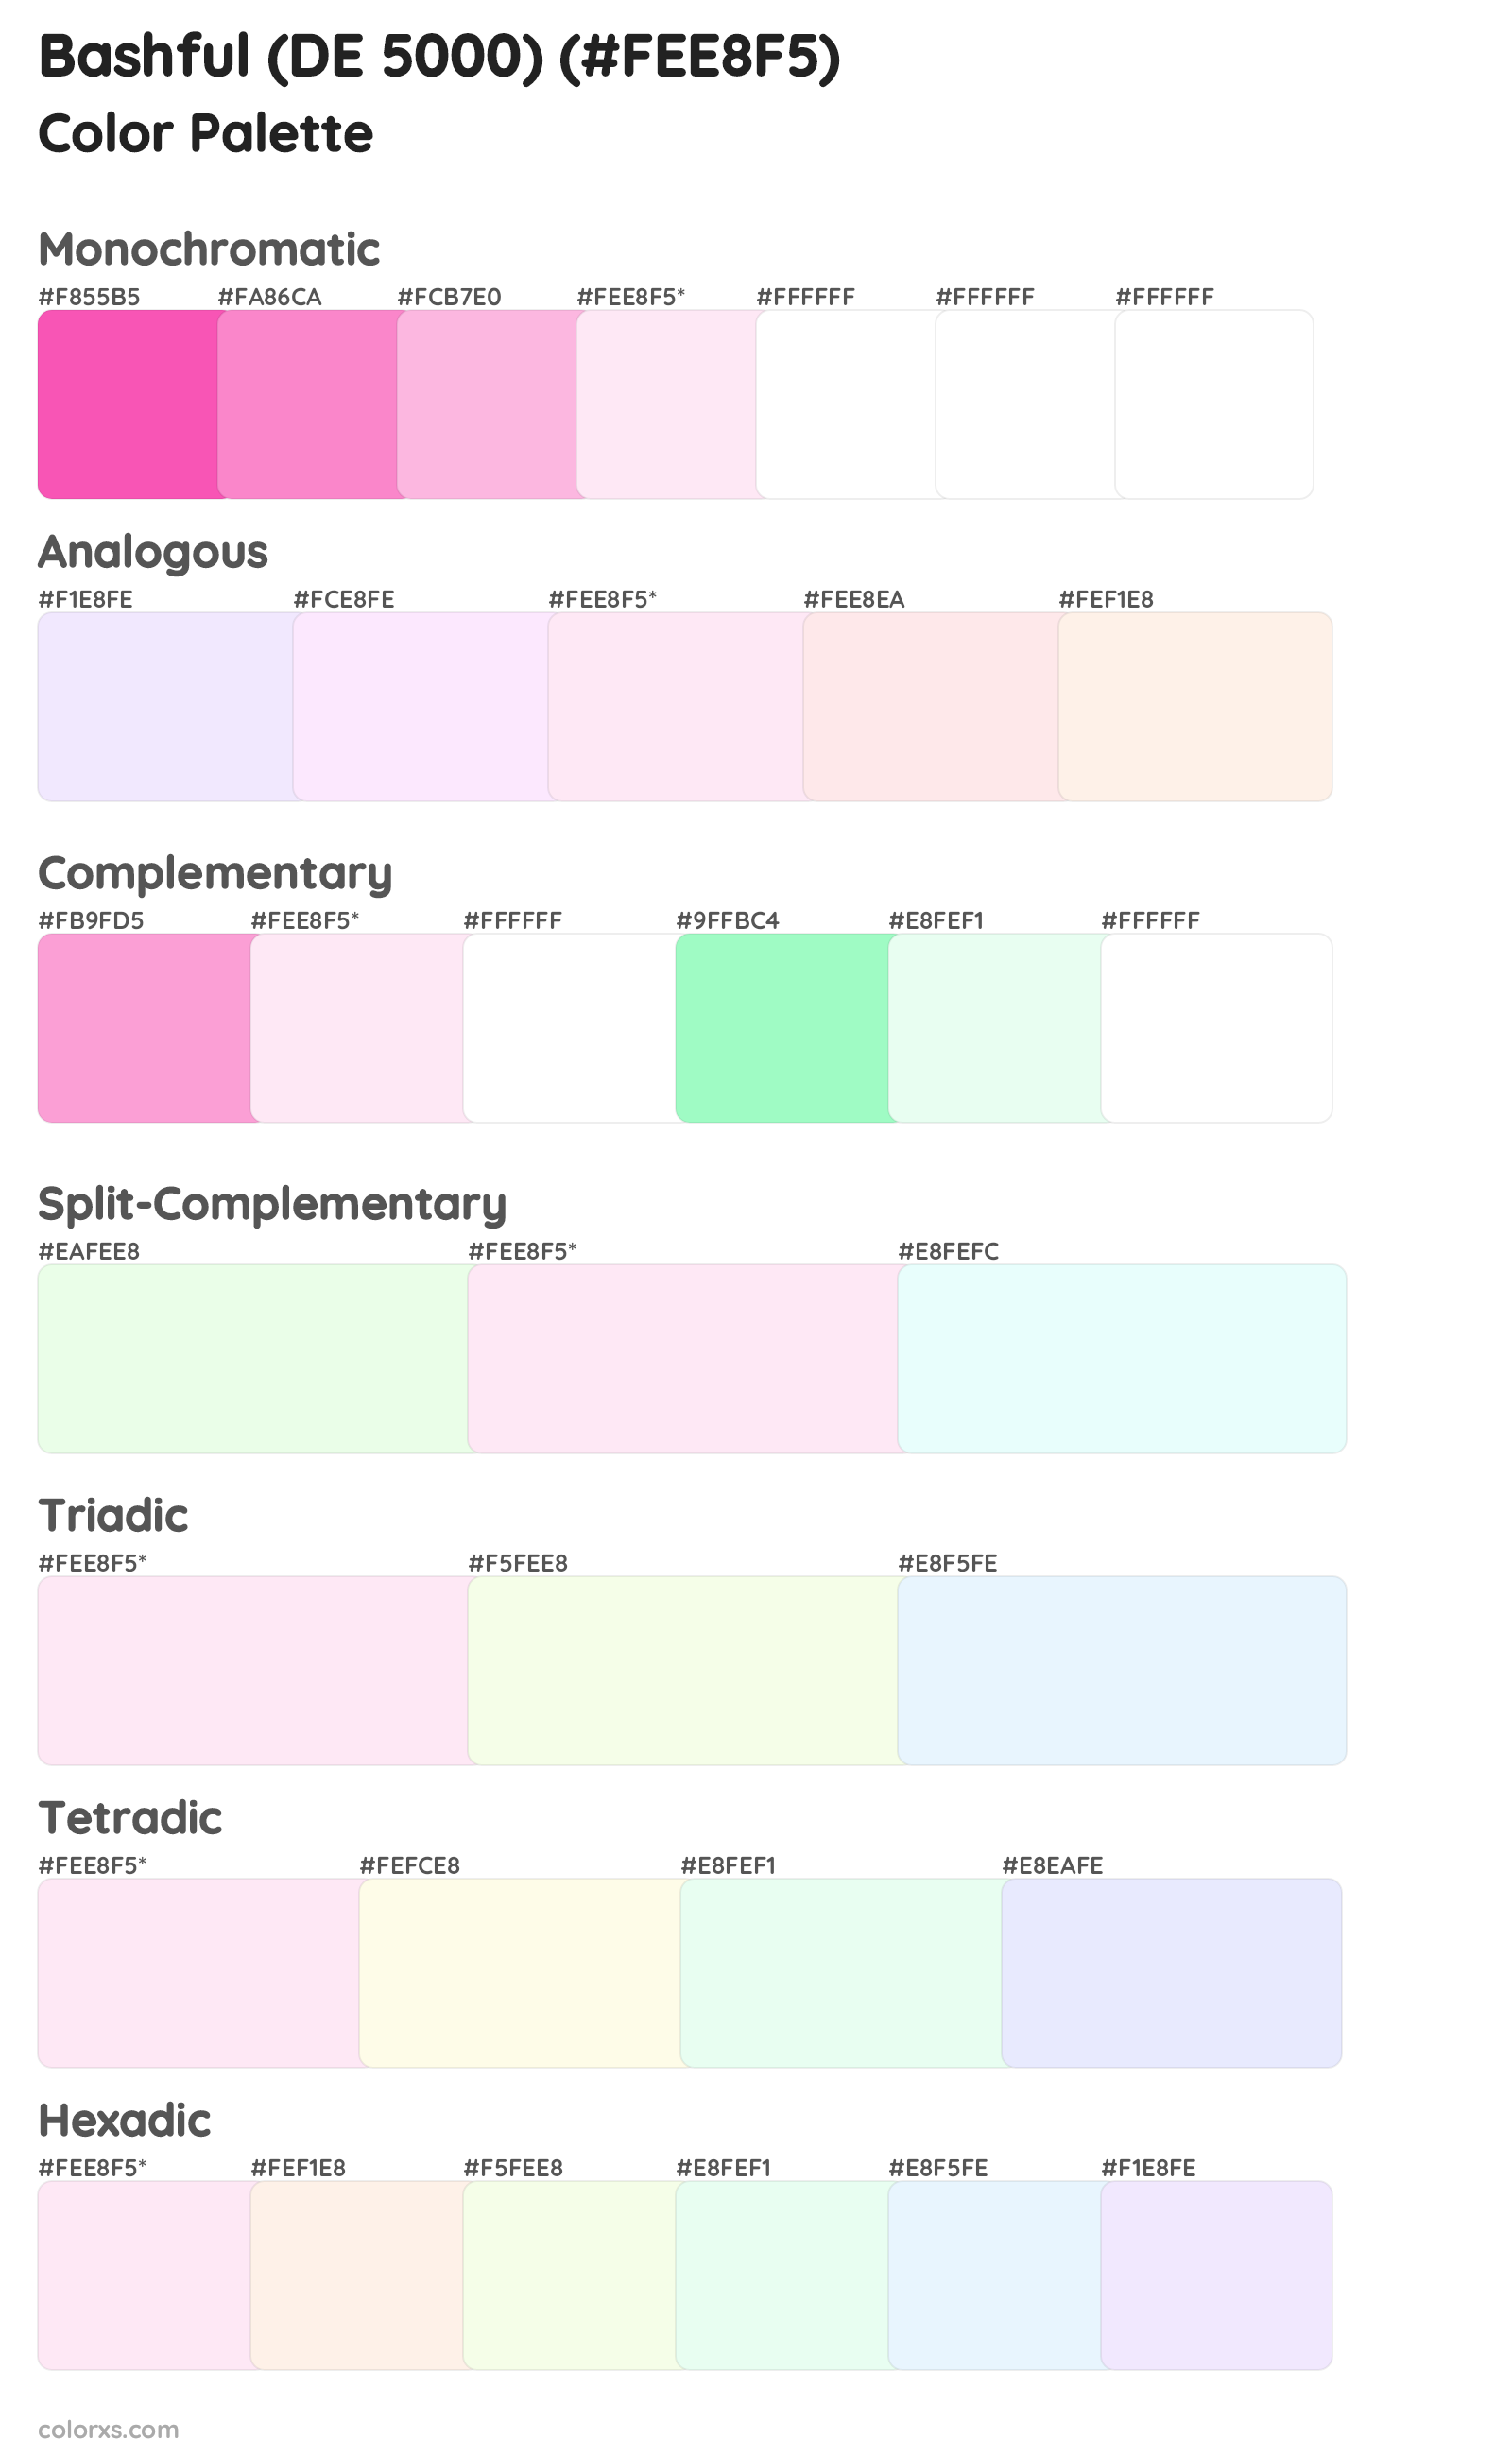 Bashful (DE 5000) Color Scheme Palettes